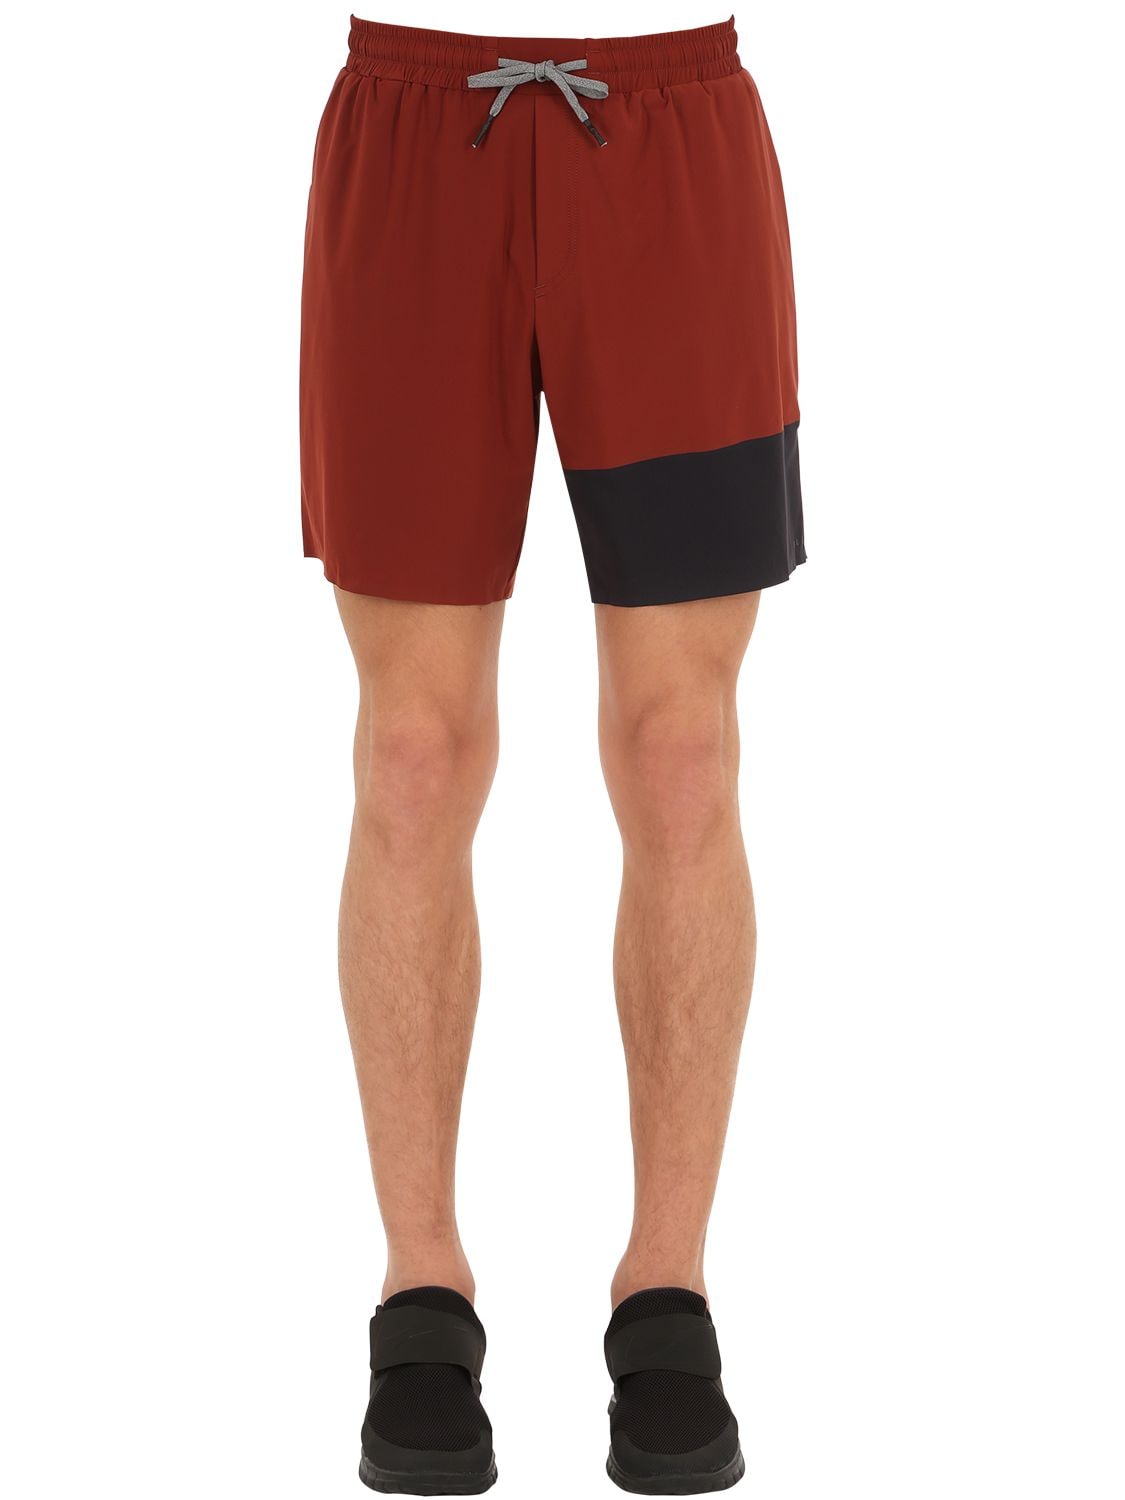 Falke Ultralight Running Shorts In Red | ModeSens